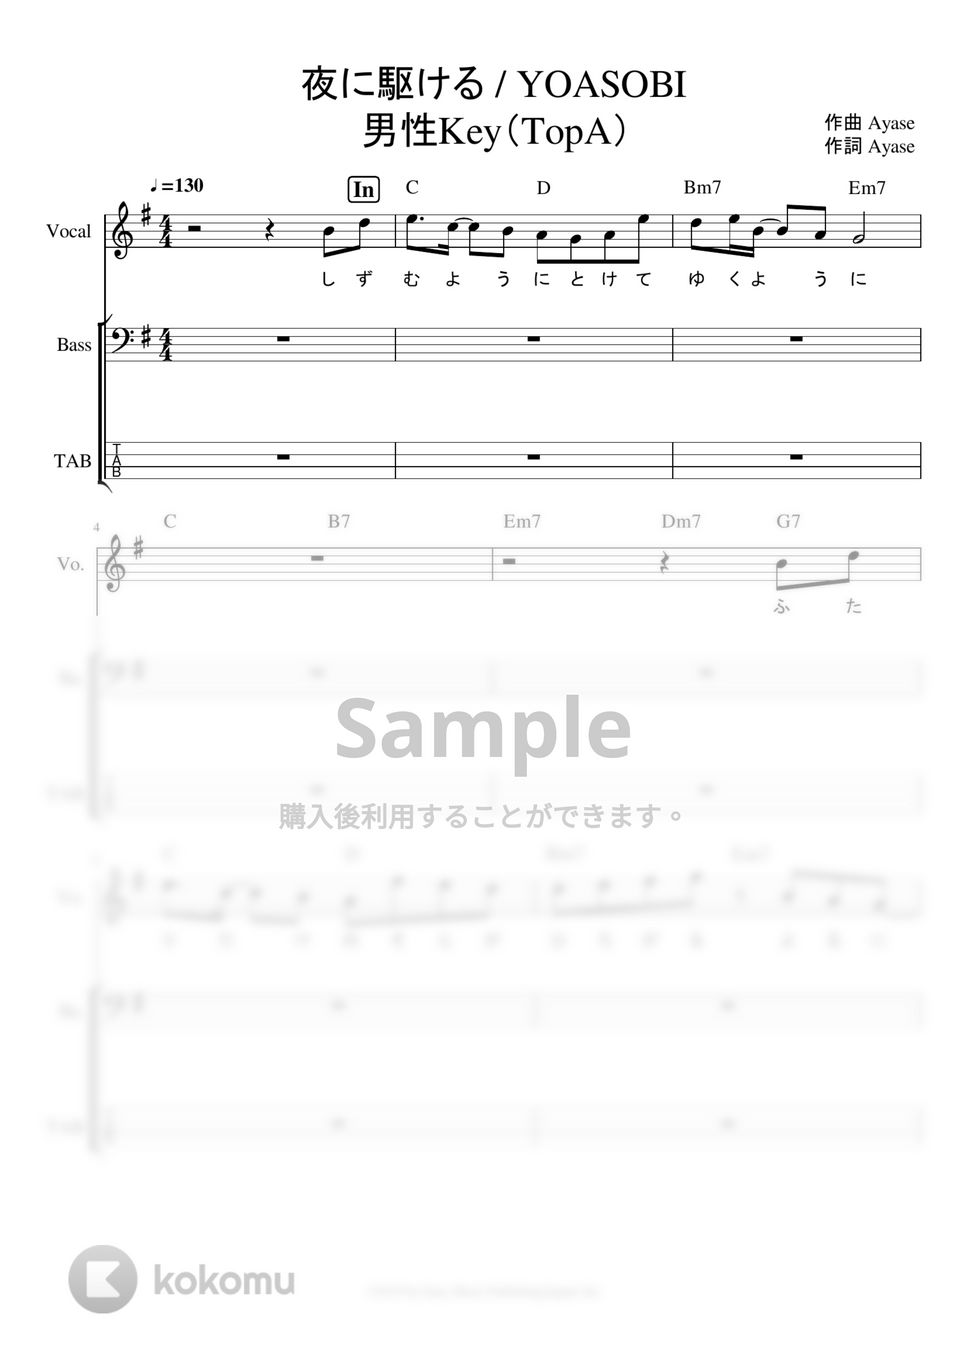 YOASOBI - ※Sample 夜に駆ける ベースタブ譜※男声アレンジ (男声キーに編曲したベースタブ譜です。) by ましまし